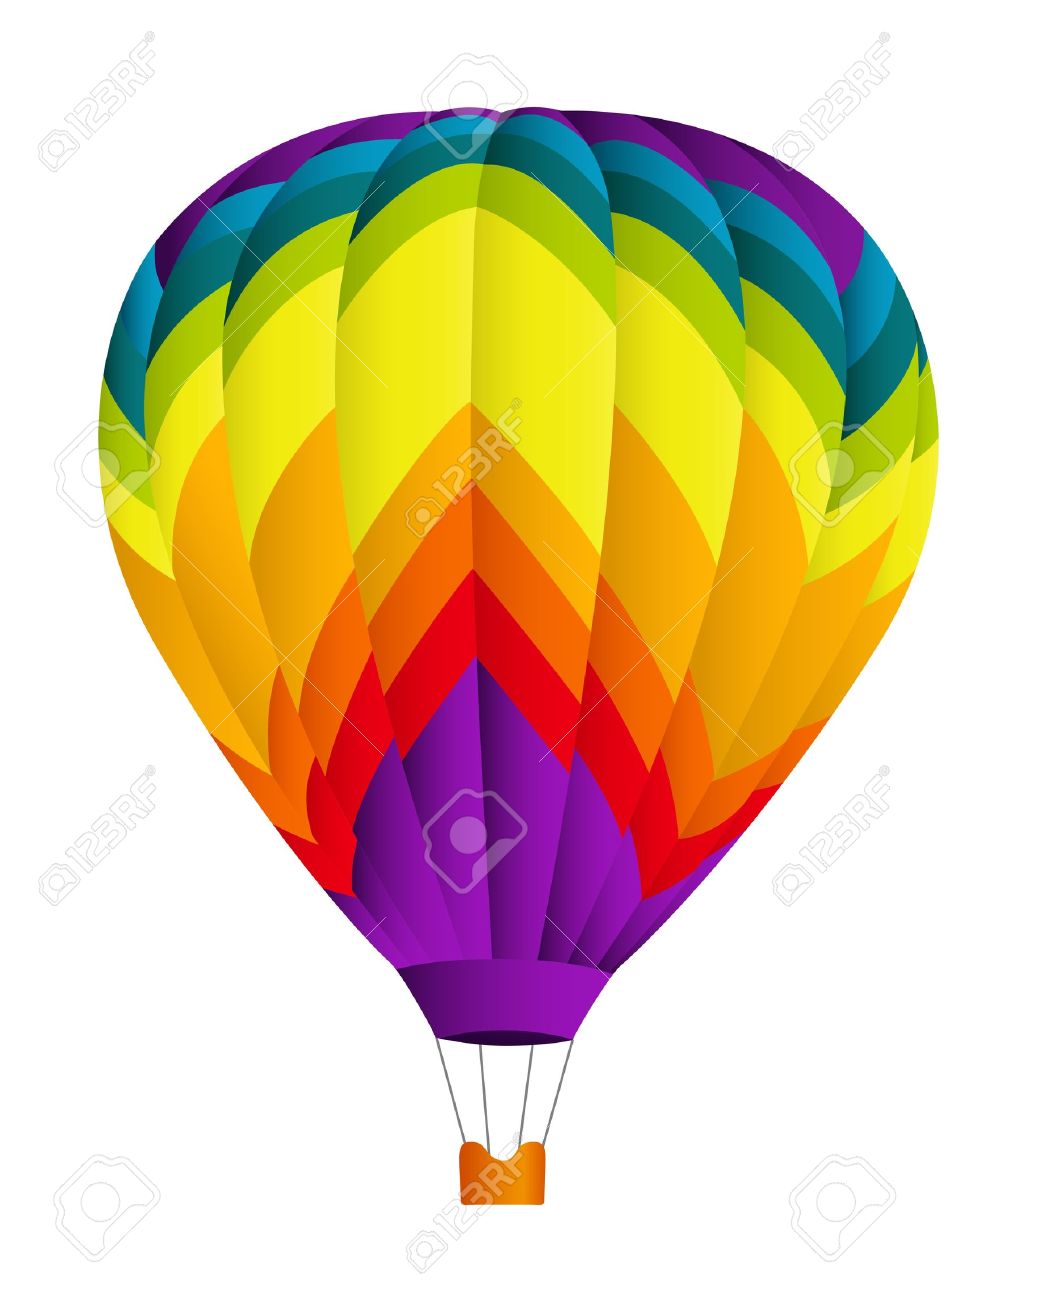 Hot Air Balloon Clip Art #131 - Clipart Hot Air Balloon